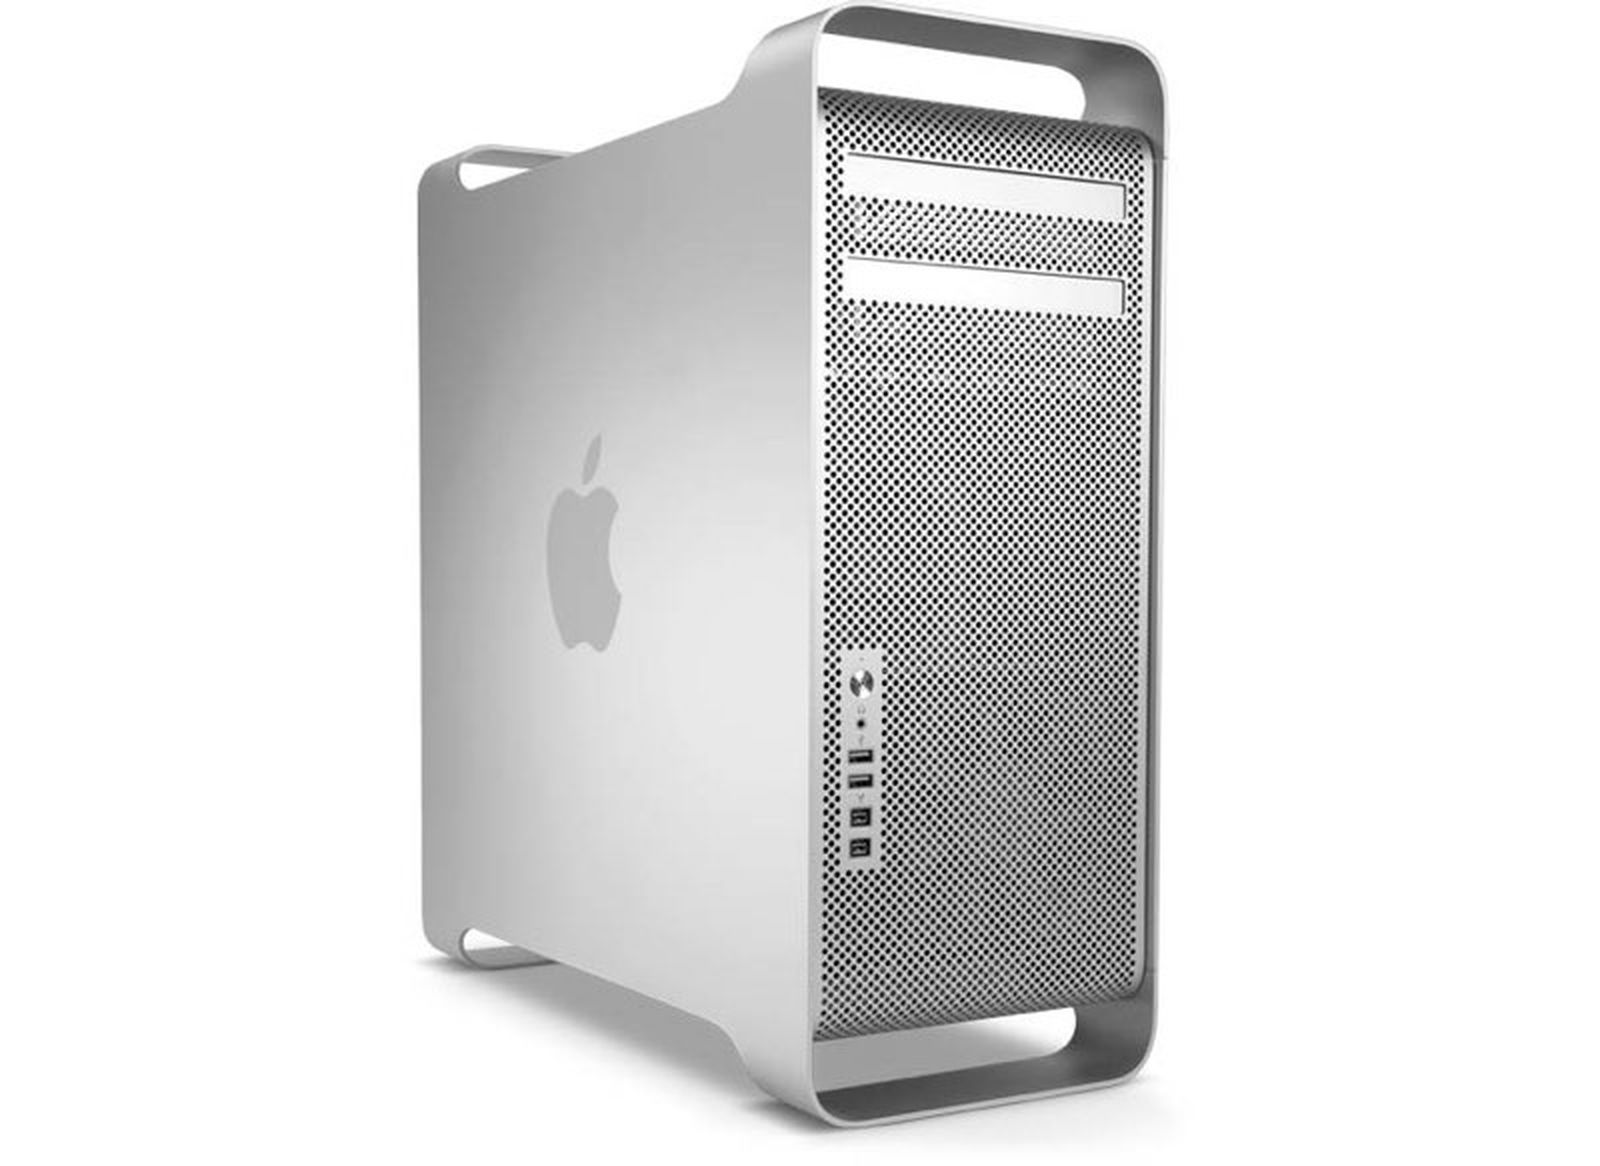 macbook pro mid 2010 ram support